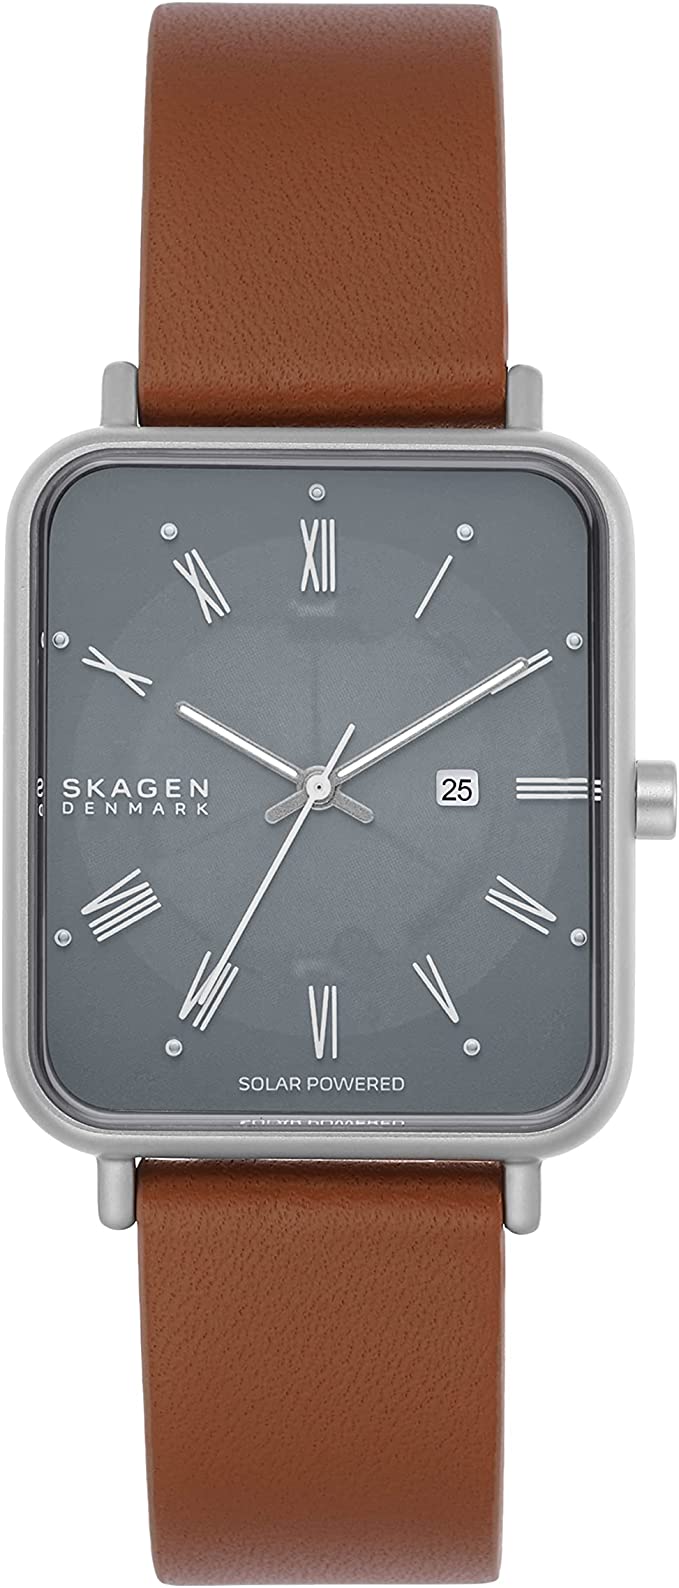 スカーゲン スカーゲン 腕時計 レディース グレー ブラウン Ryle Solar Powered クオーツ SKAGEN SKW6847